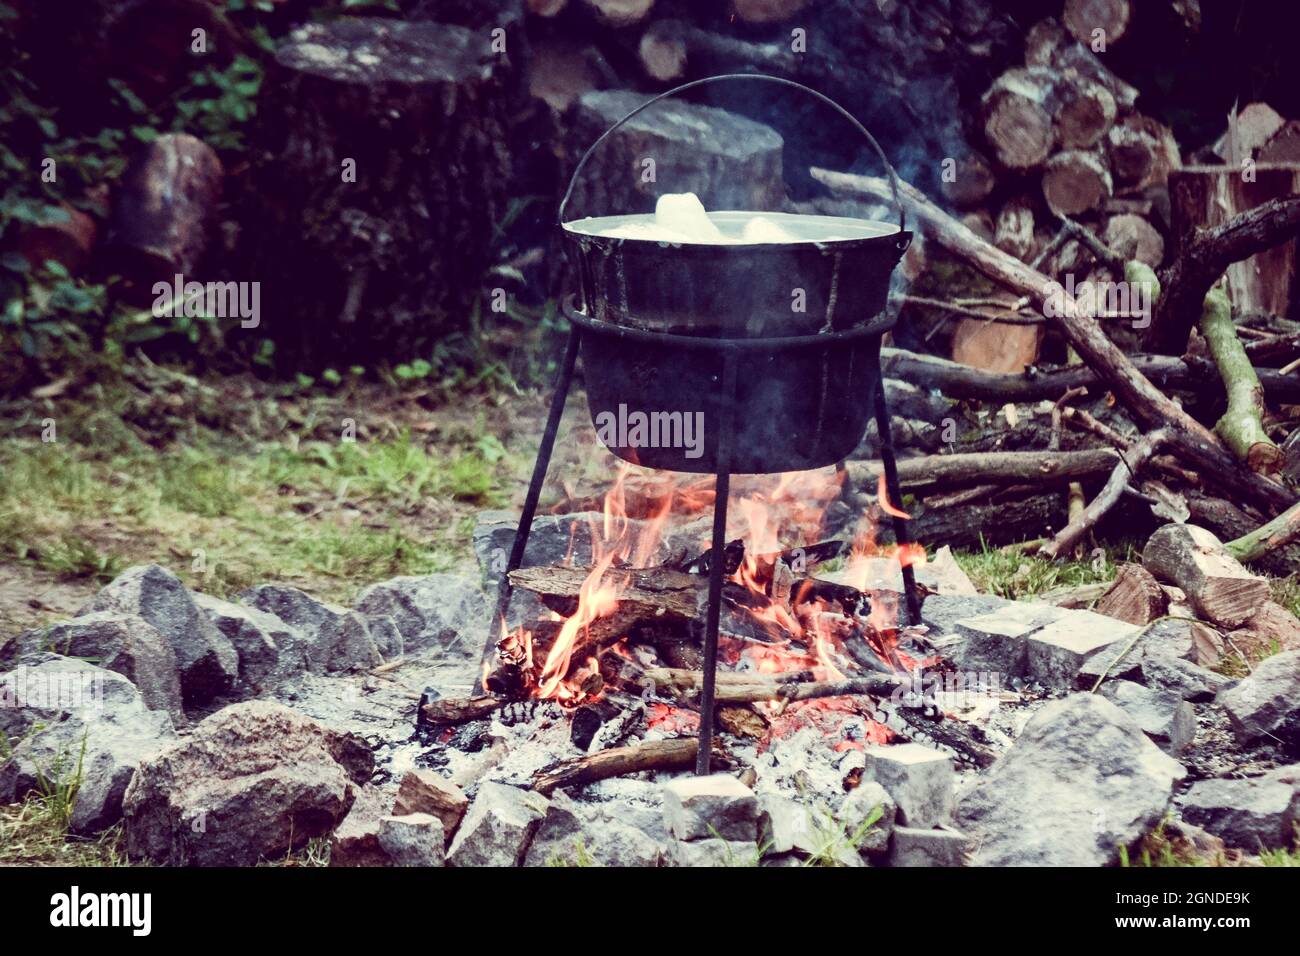 https://c8.alamy.com/comp/2GNDE9K/tourist-kettle-of-boiling-food-over-a-campfire-2GNDE9K.jpg